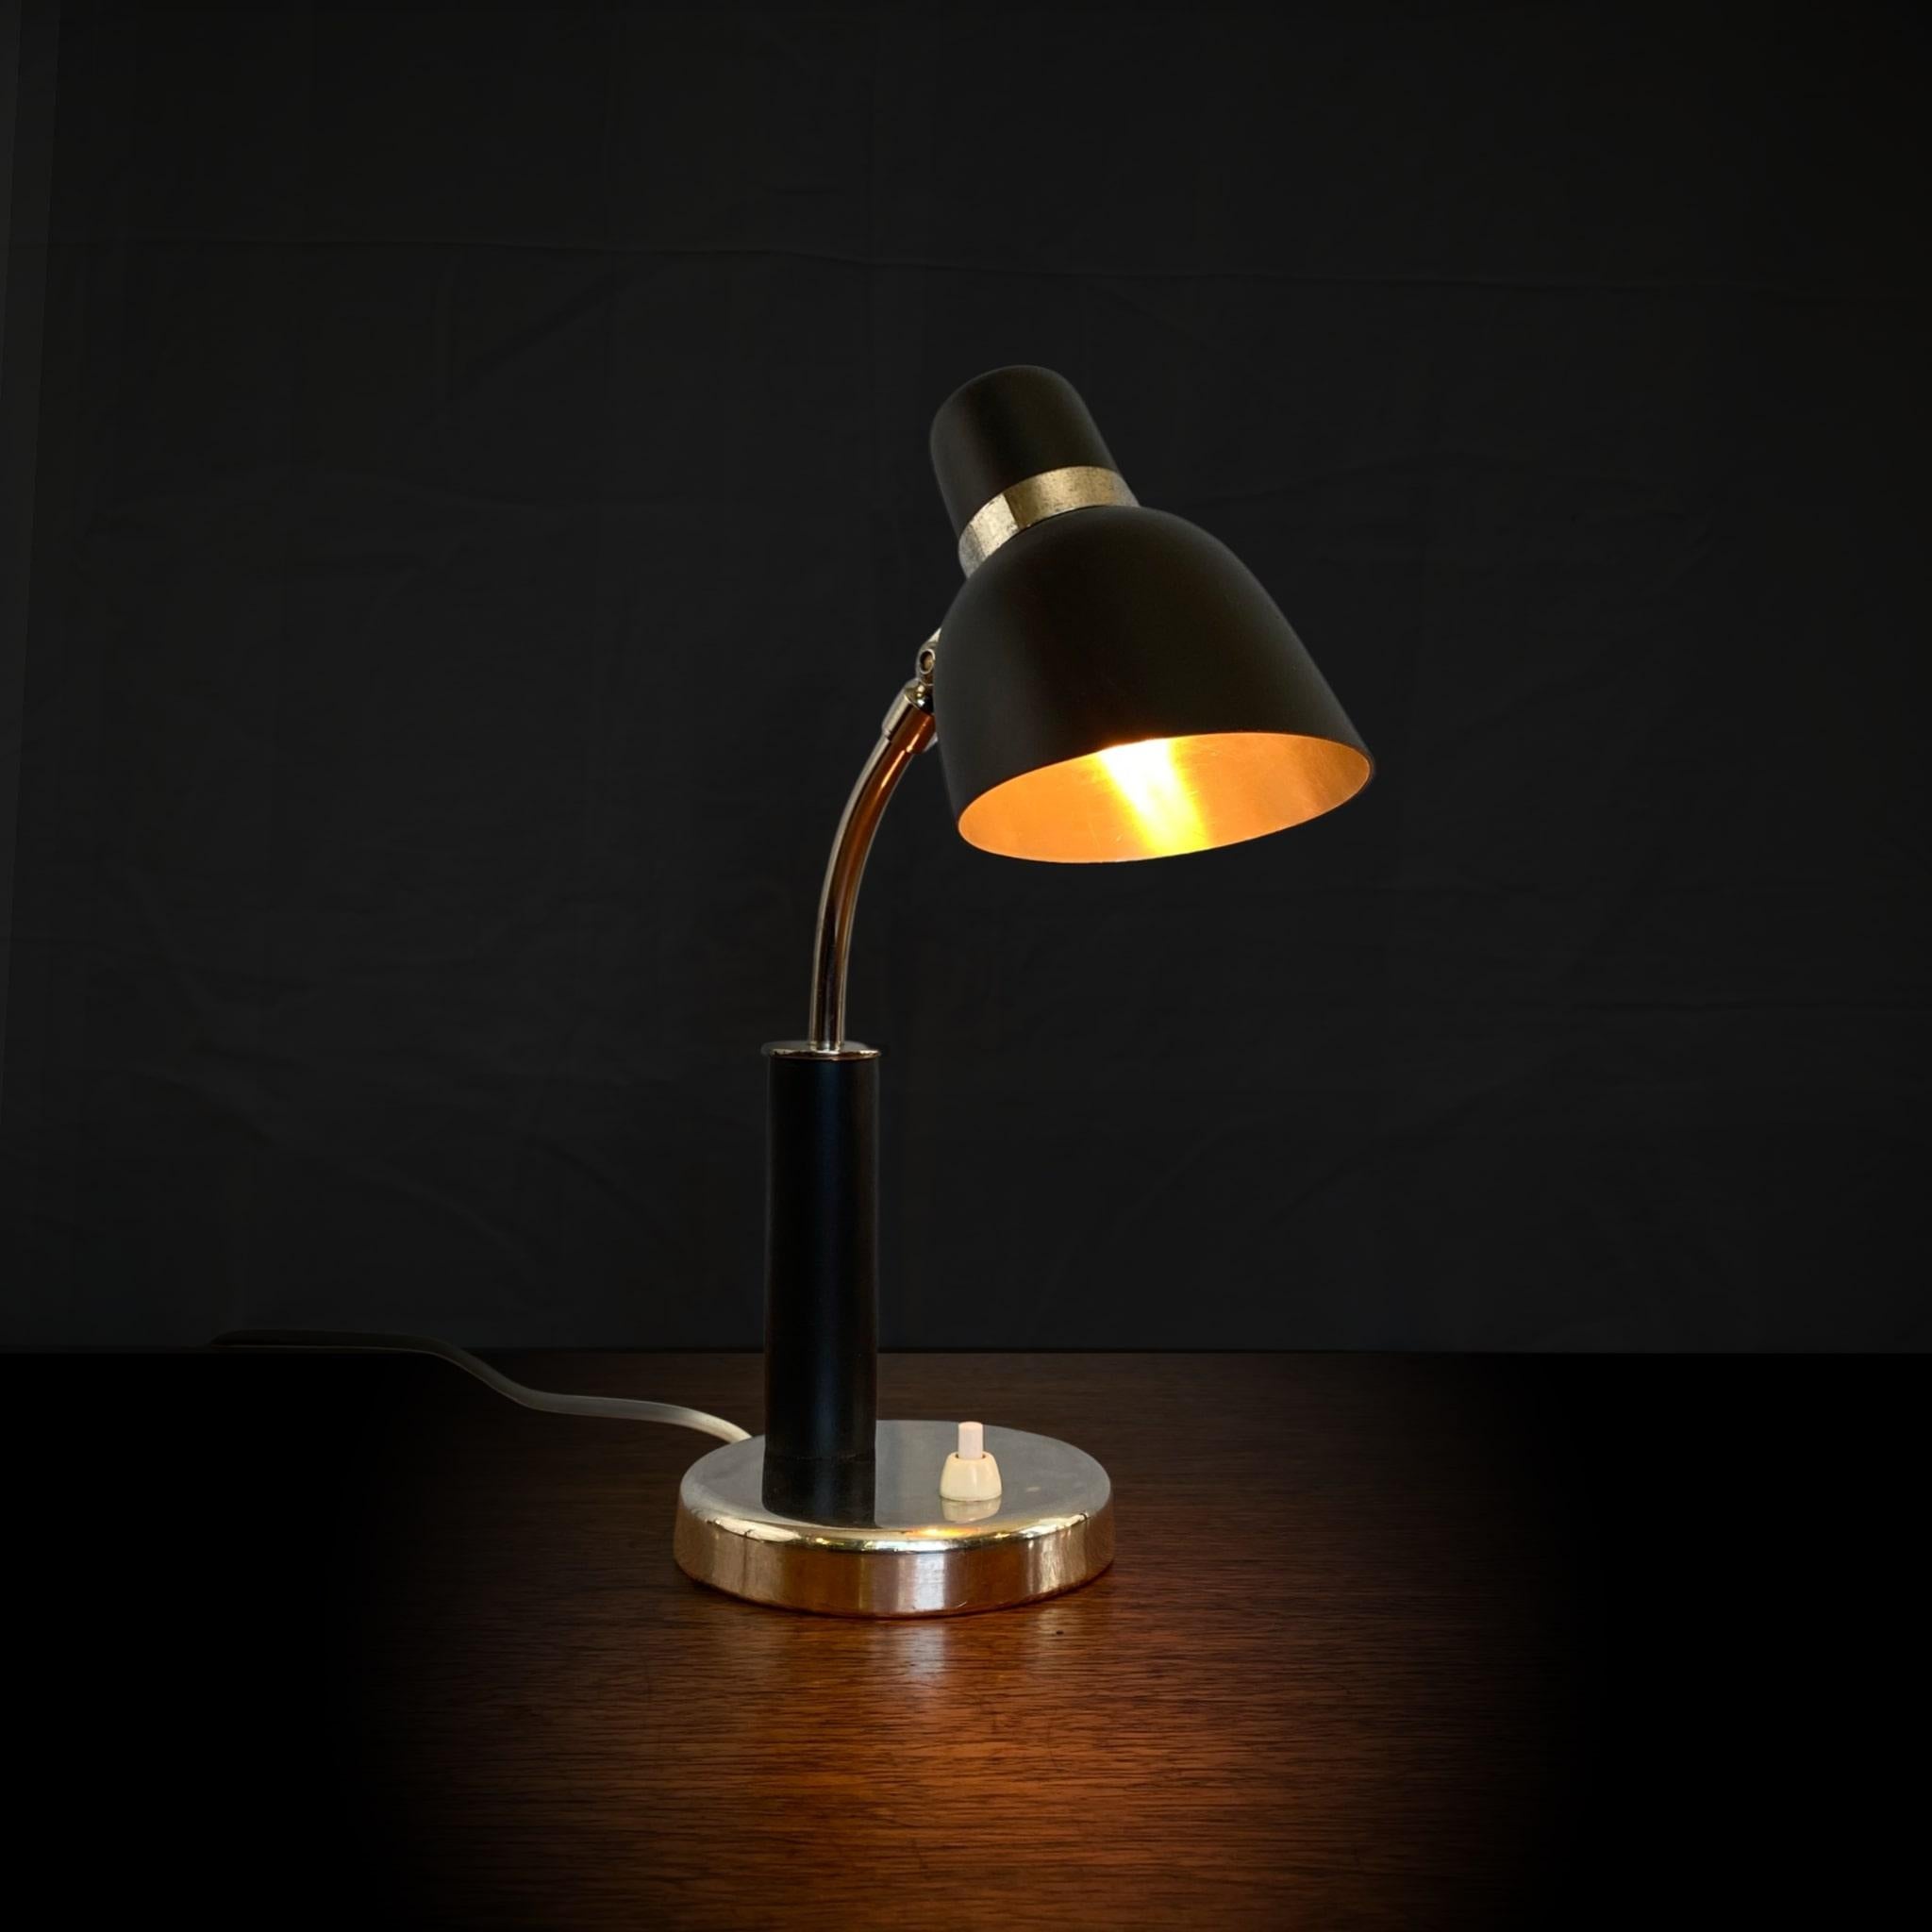 Petite lampe de table, faisant également office d'applique, produite par le département éclairage du grand magasin suédois Nordiska Kompaniet dans les années 1930, peut-être conçue par Erik Tidstrand. Fabriqué en acier et en métal chromé avec des